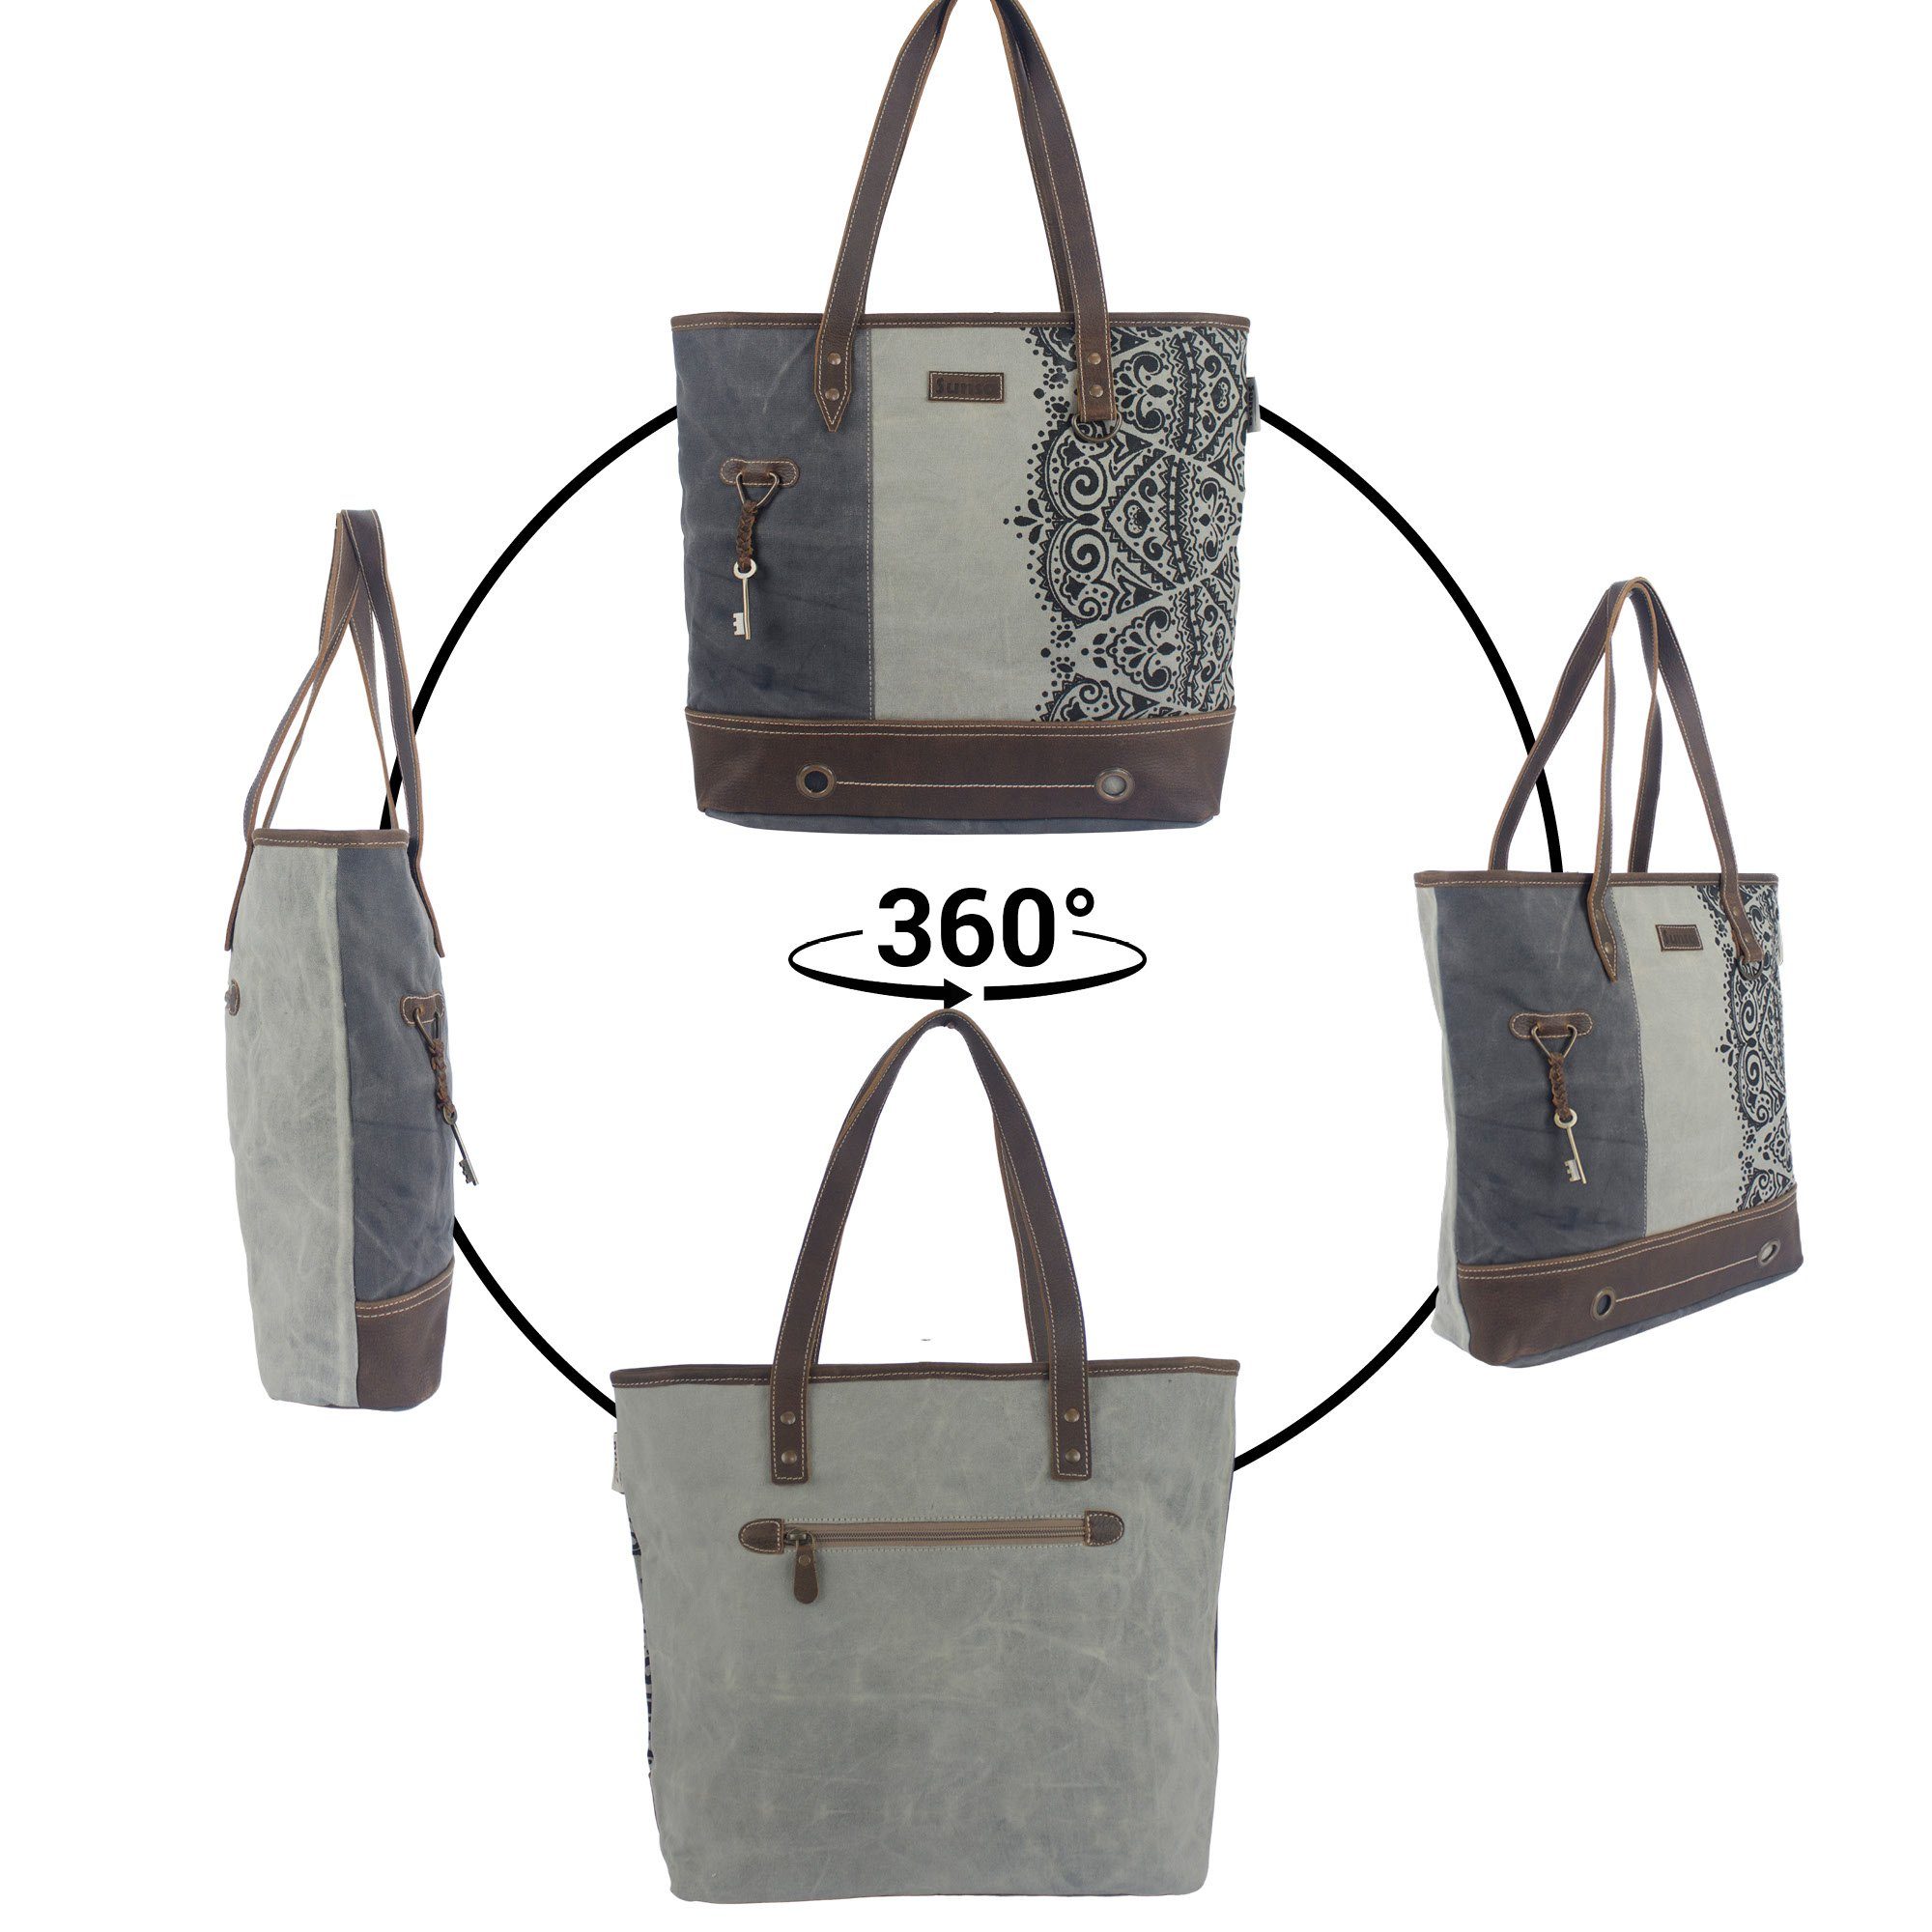 Tasche Damen Handtasche Mandala grau/ Sunsa 52507 Große schwarz Tote model Canvas Handtasche. Design. Schultertasche mit